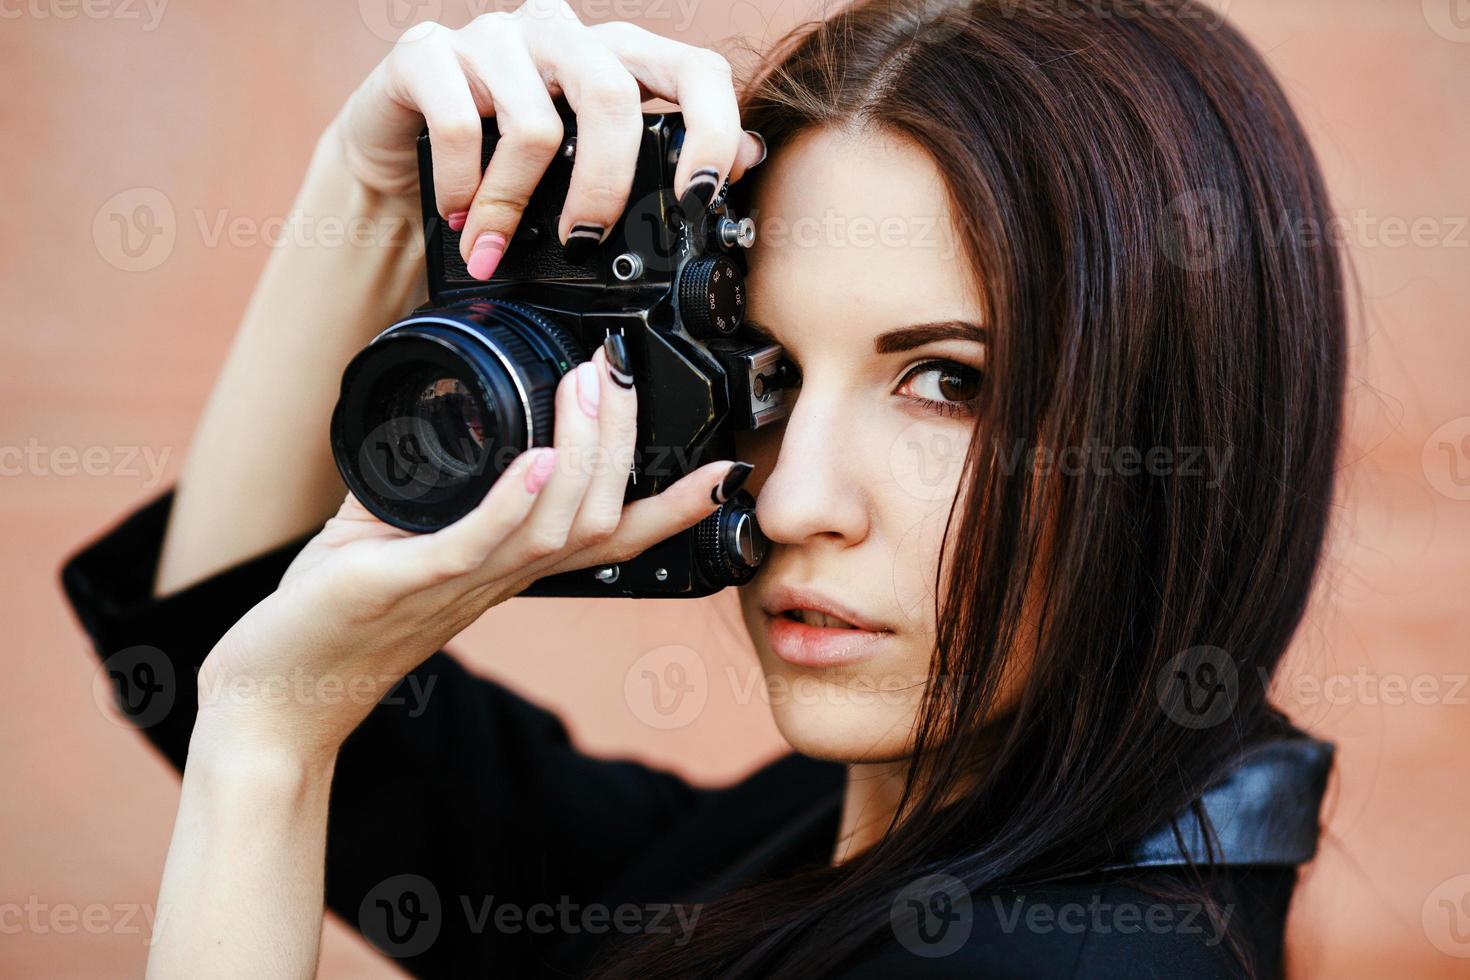 linda fotógrafa feminina posando com câmera foto